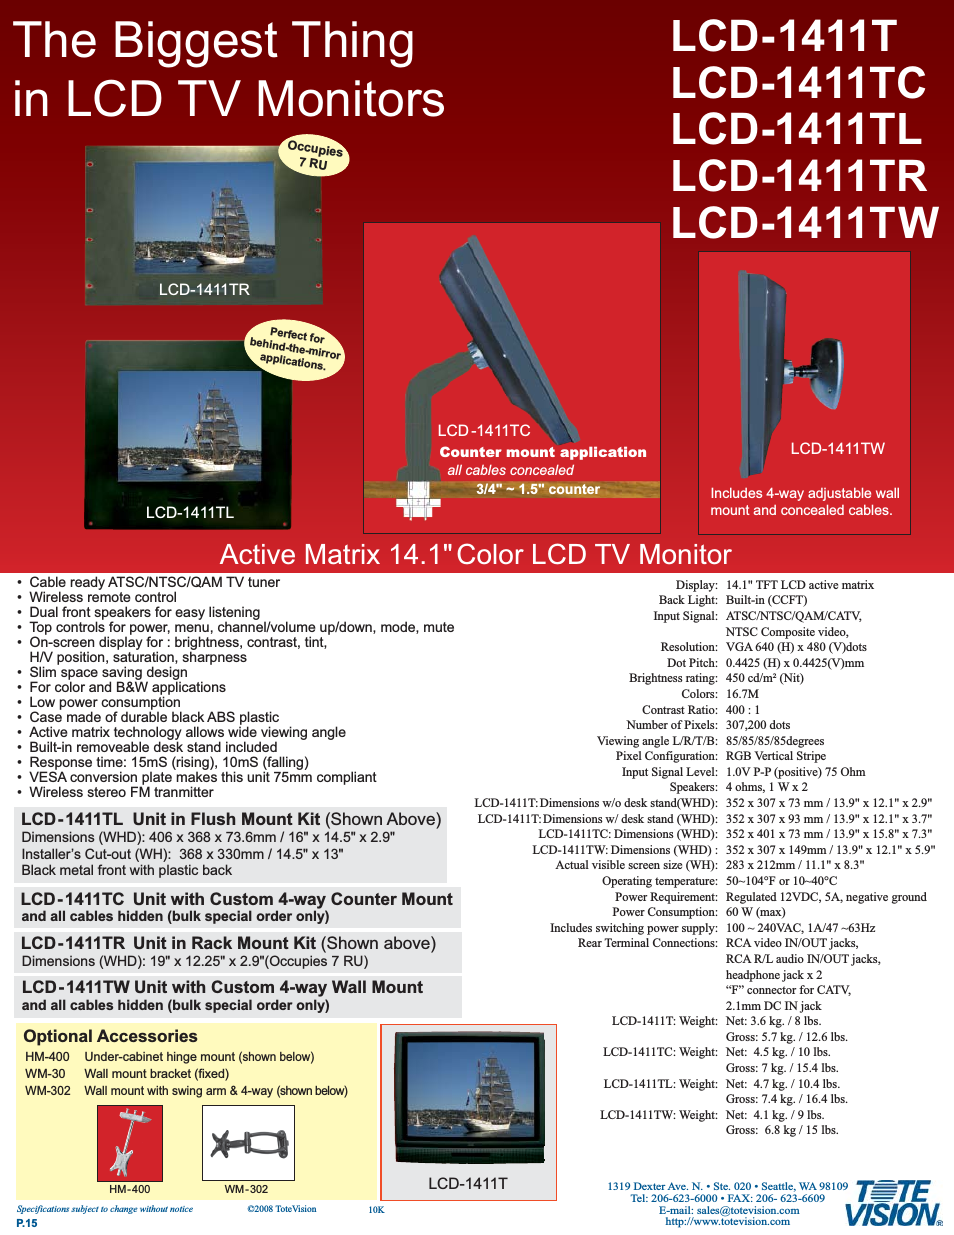 LCD-1411TL